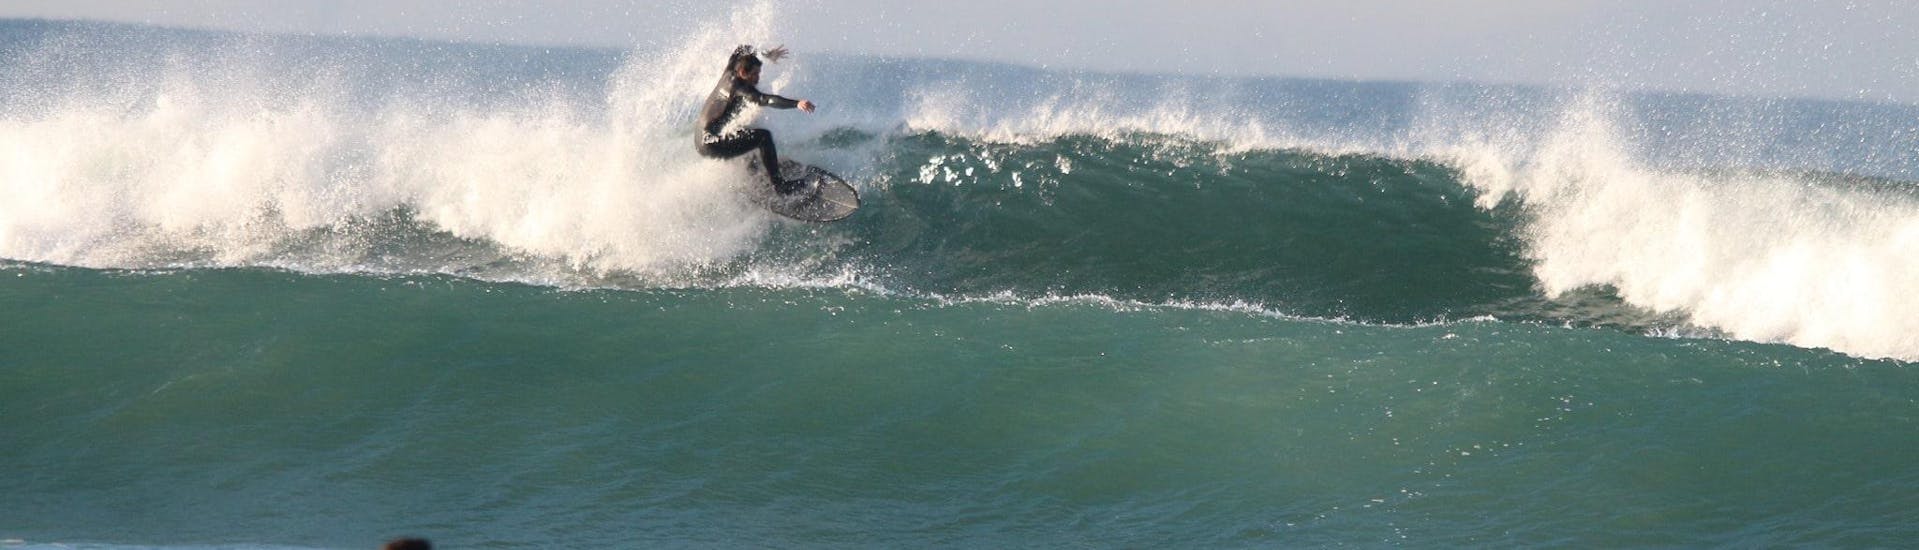 Curso de Surf en Matosinhos a partir de 5 años para todos los niveles.